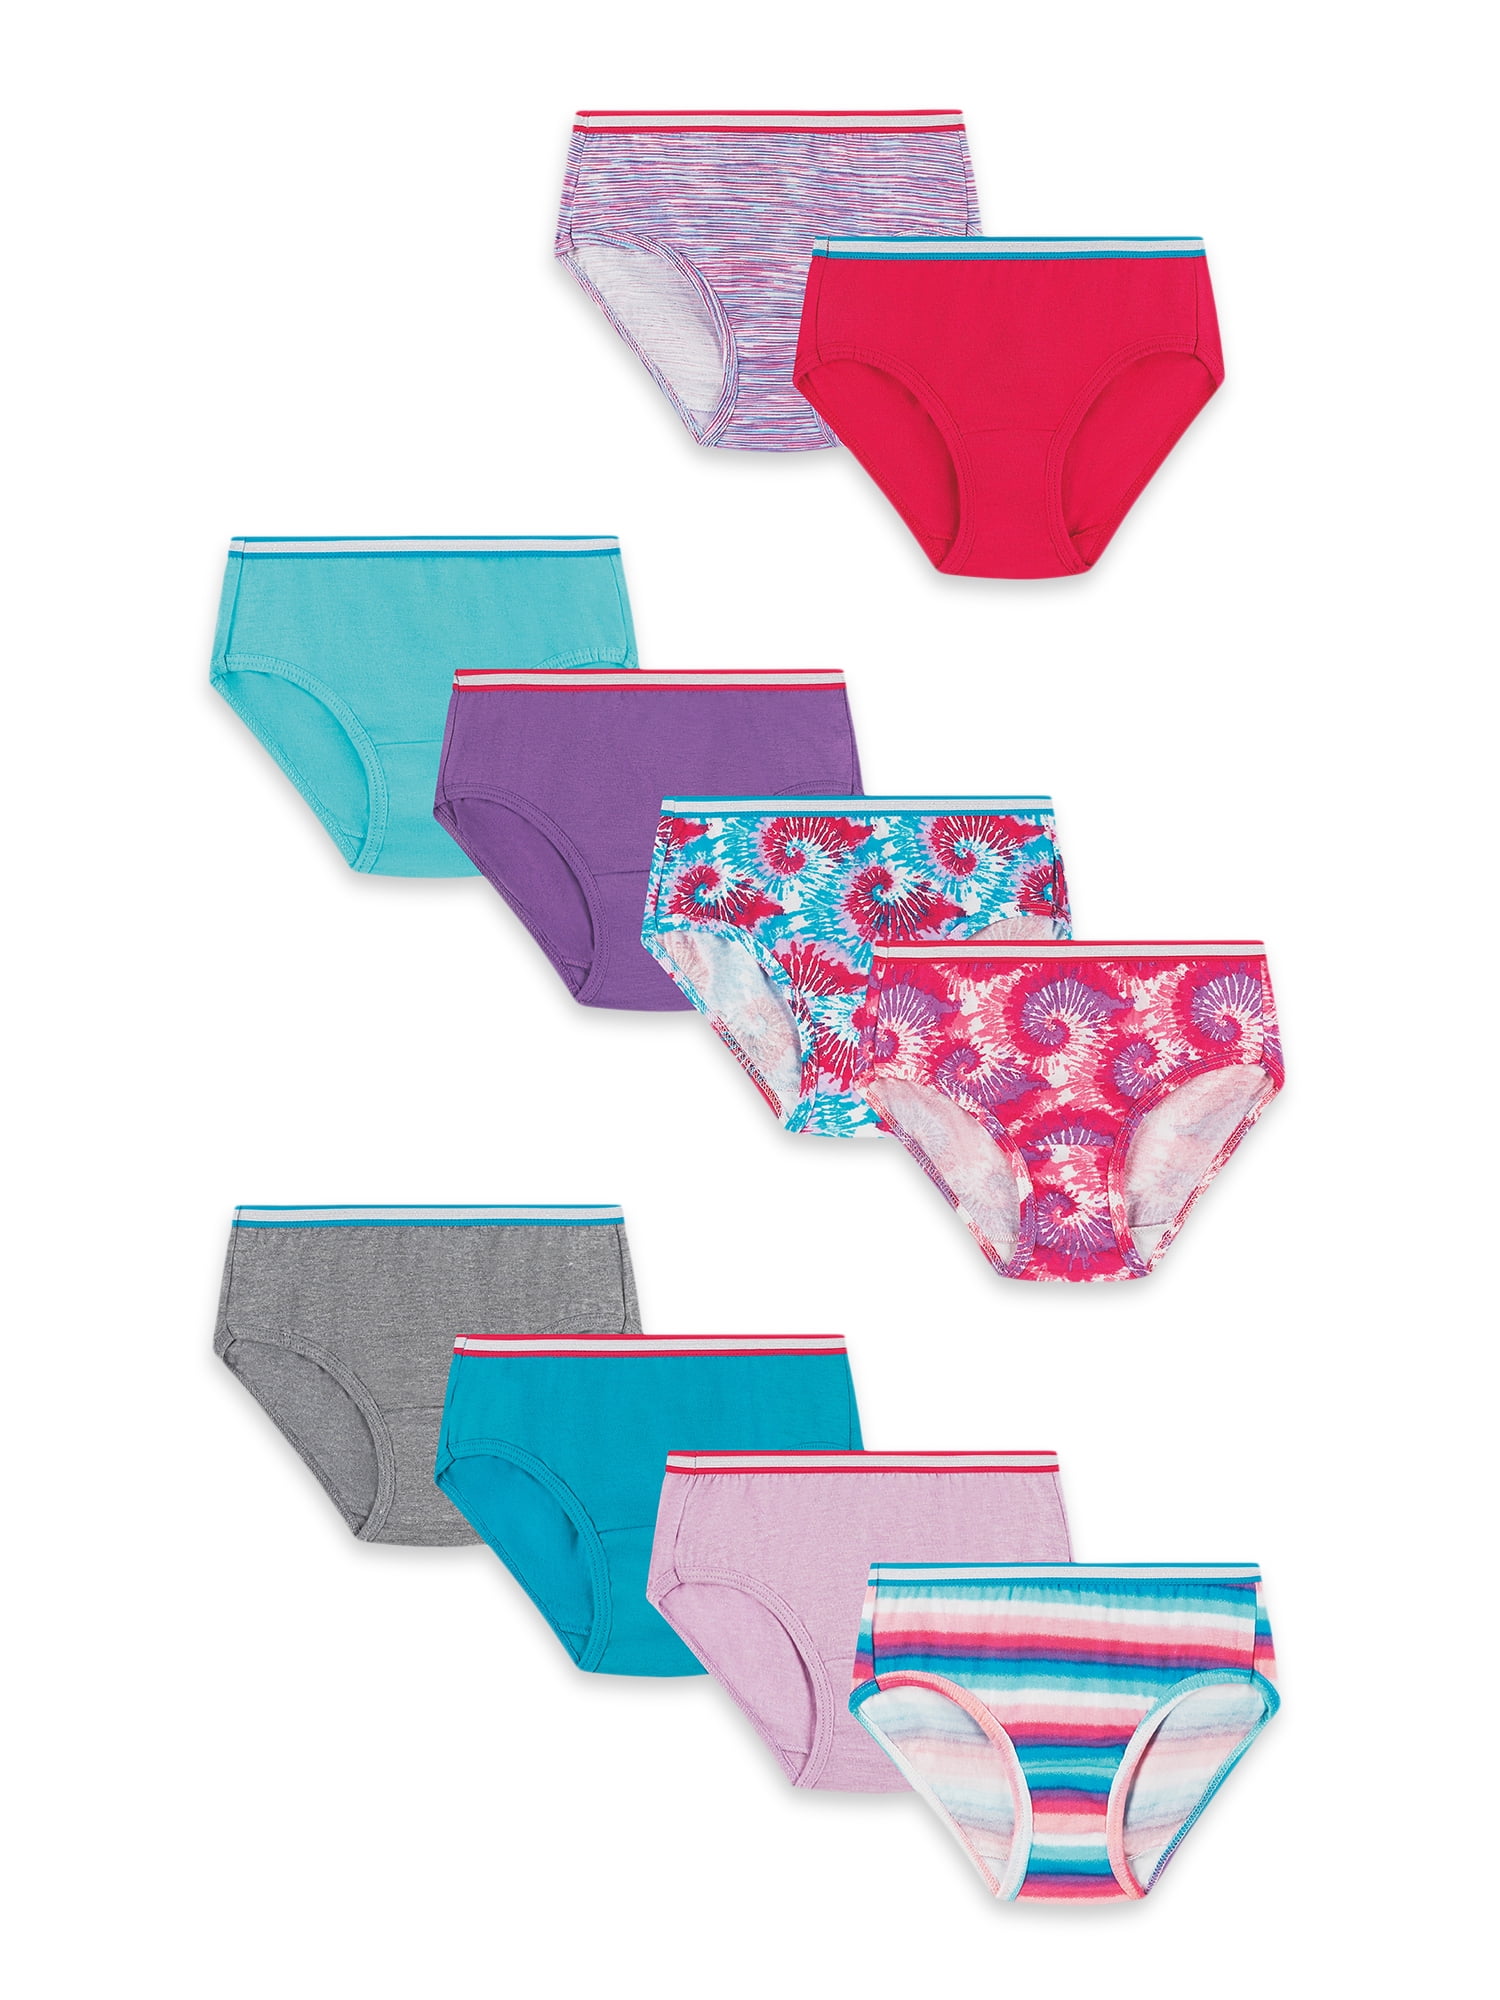 Hanes Toddler Girls' Hipster Underwear Pack, Tagless® Cotton